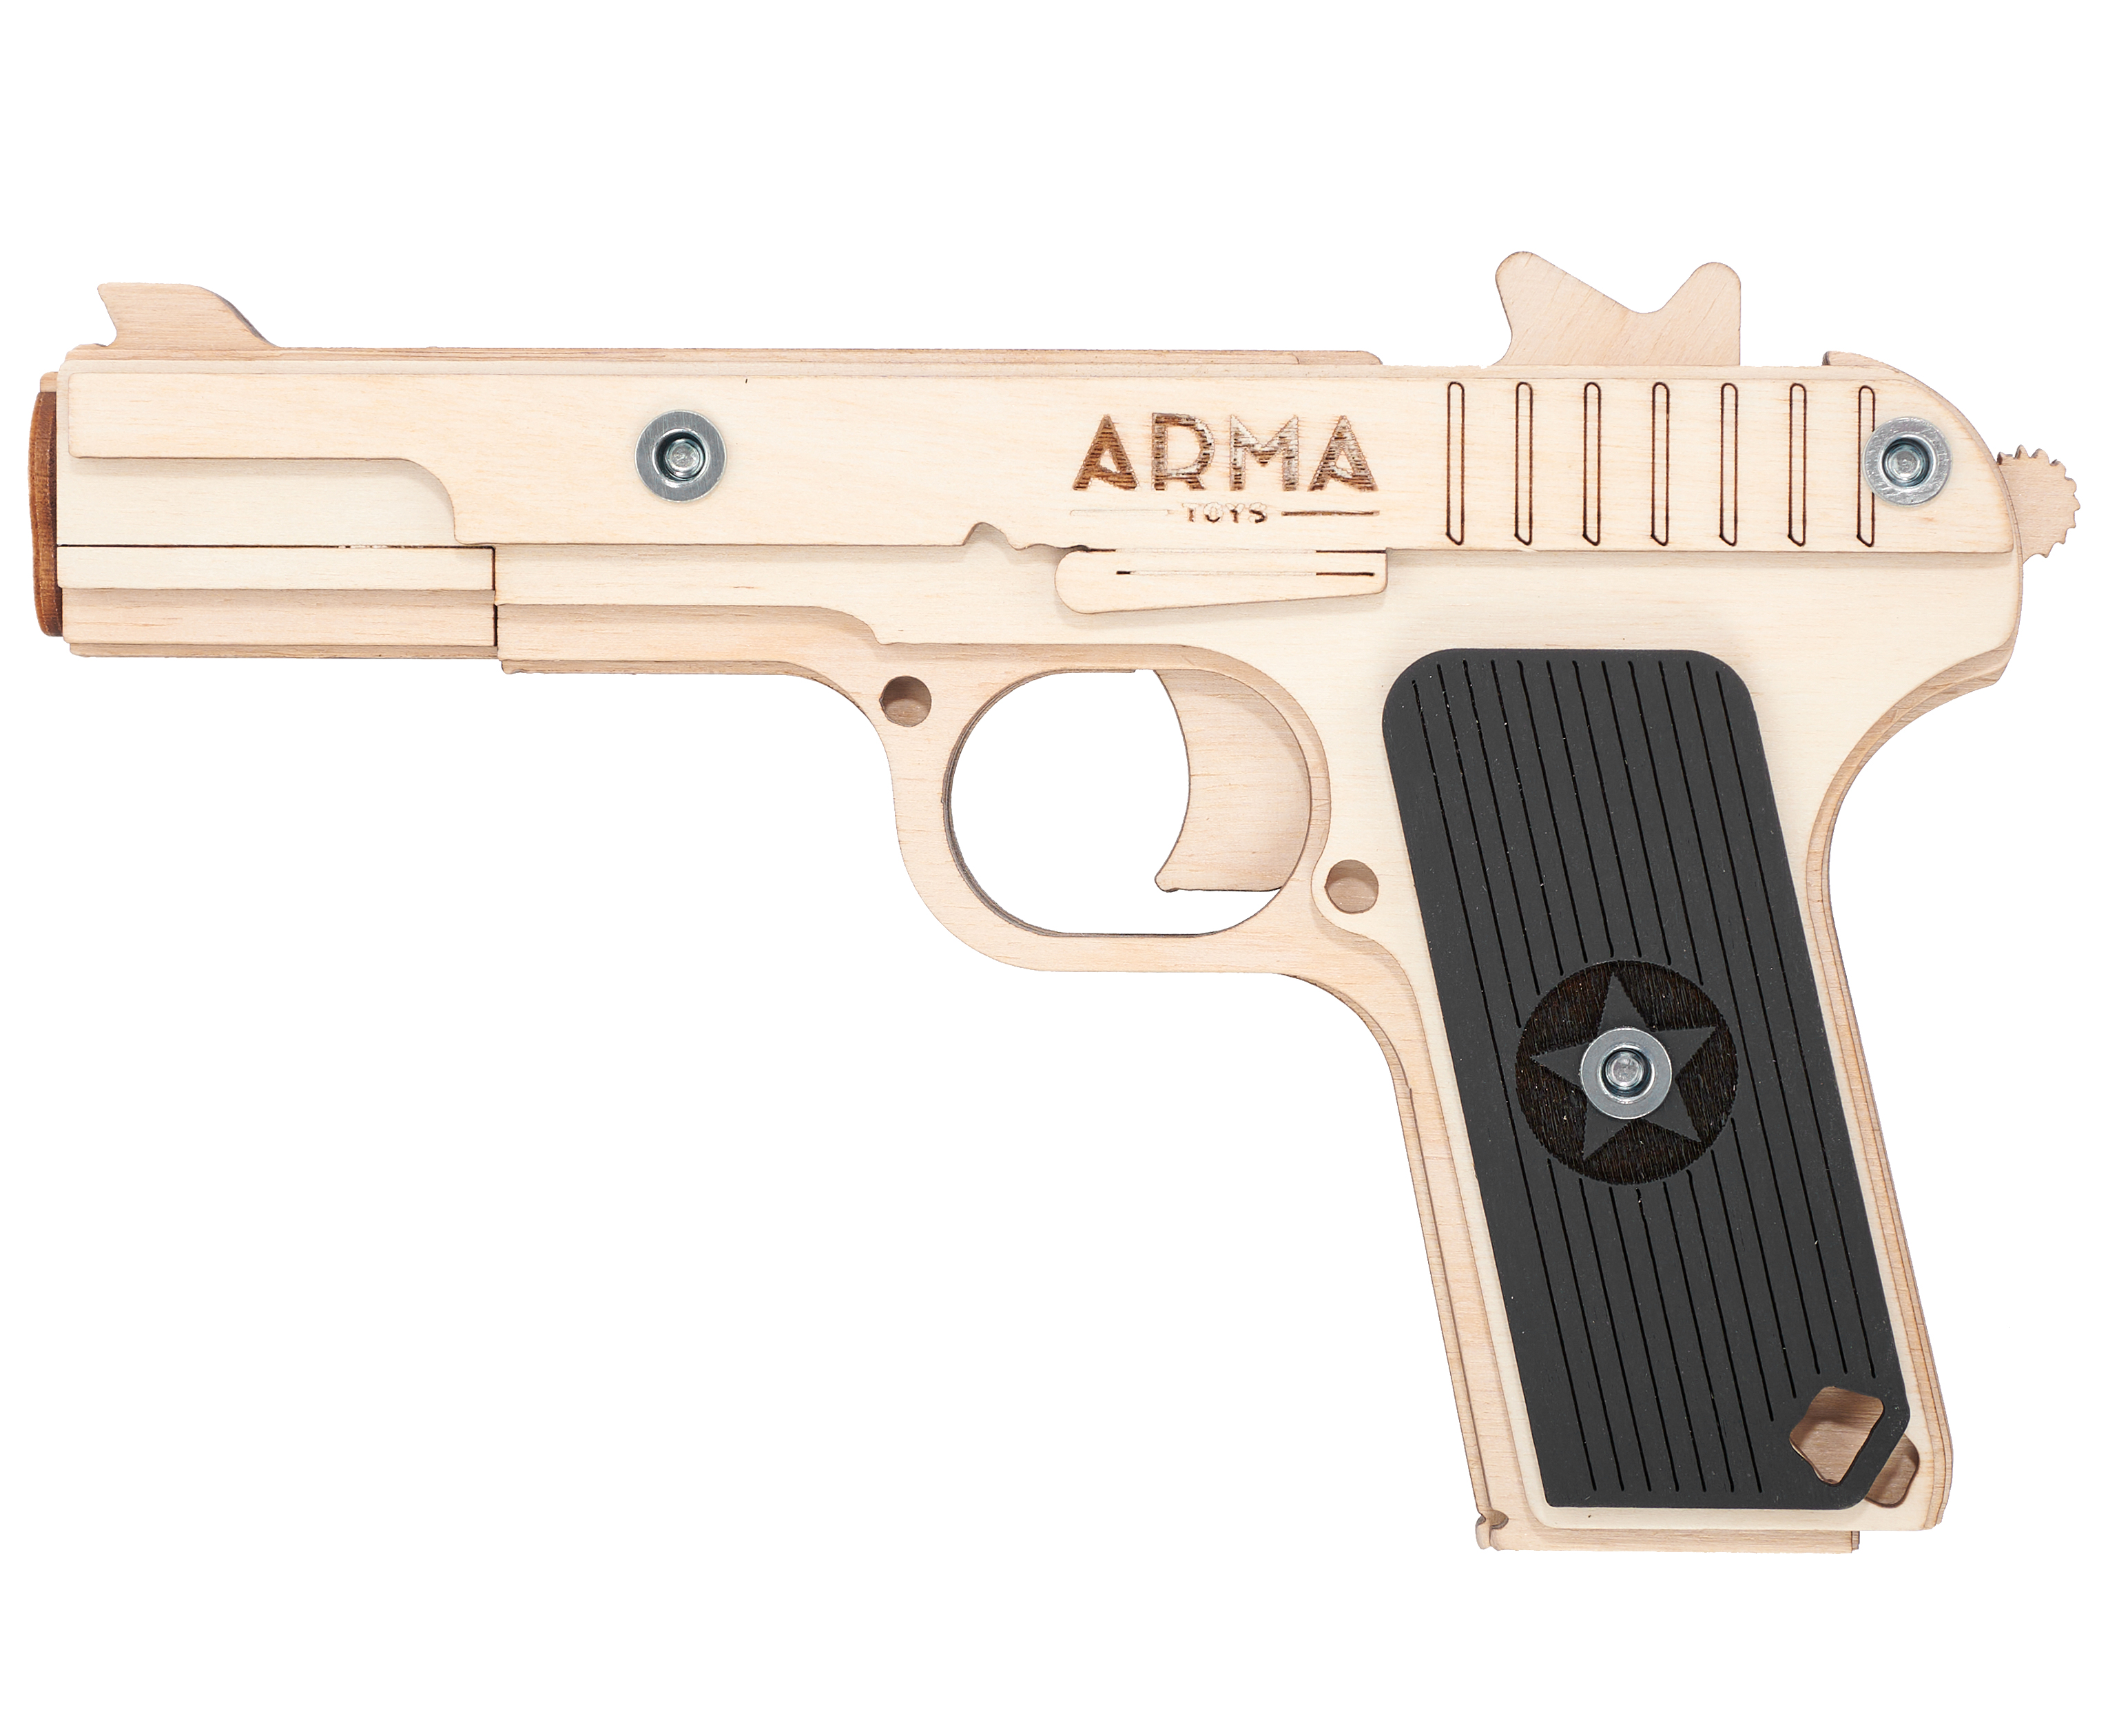 Резинкострел игрушечный Arma toys пистолет ТТ макет, Токарев, AT019